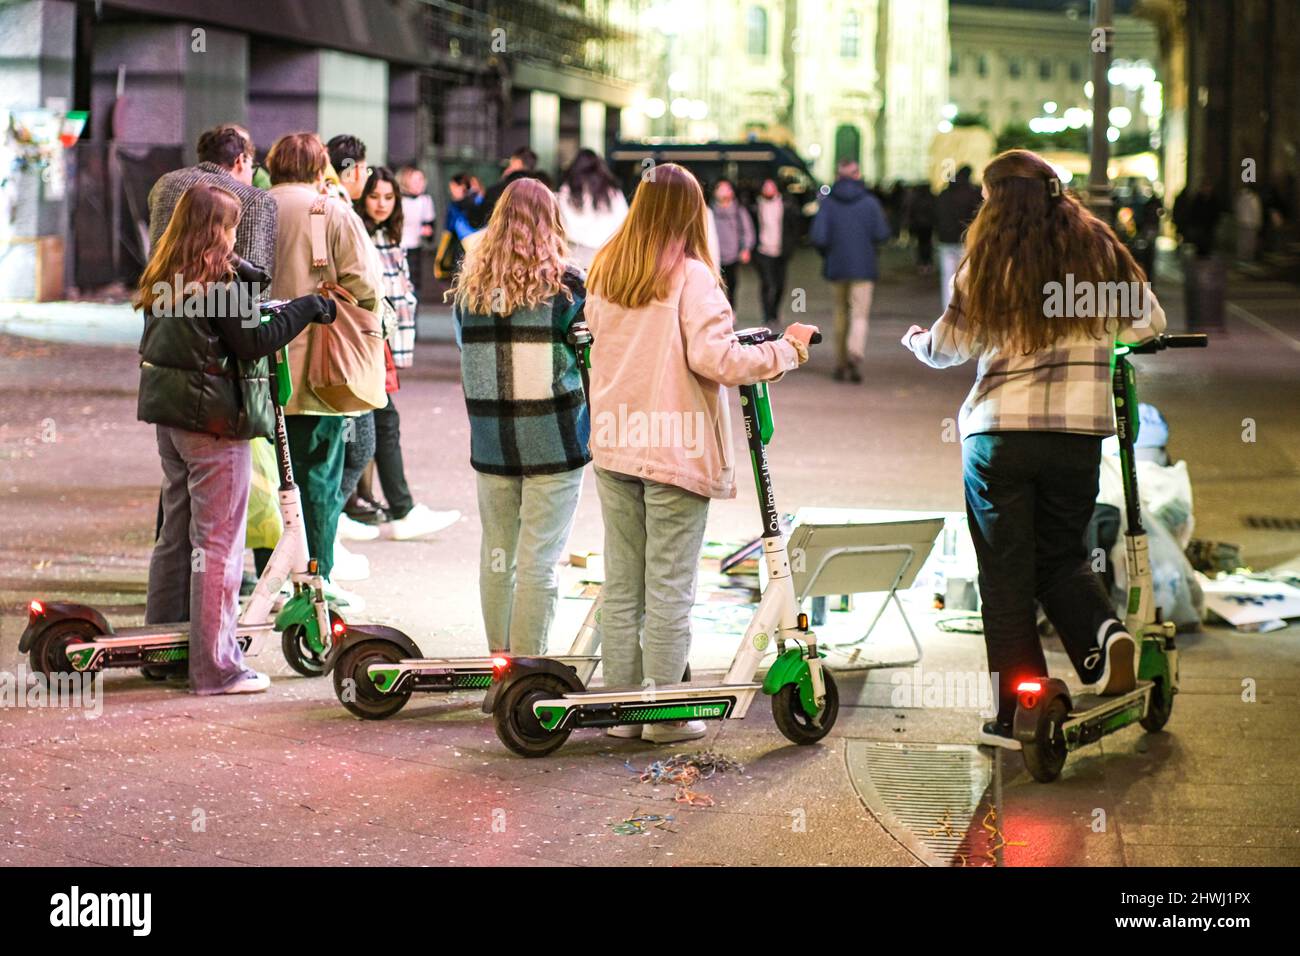 Mailand, Italien - Junge Frauen mit Elektrorollern machen einen Stopp, um einen Straßenkünstler bei der Arbeit zu beobachten Stockfoto